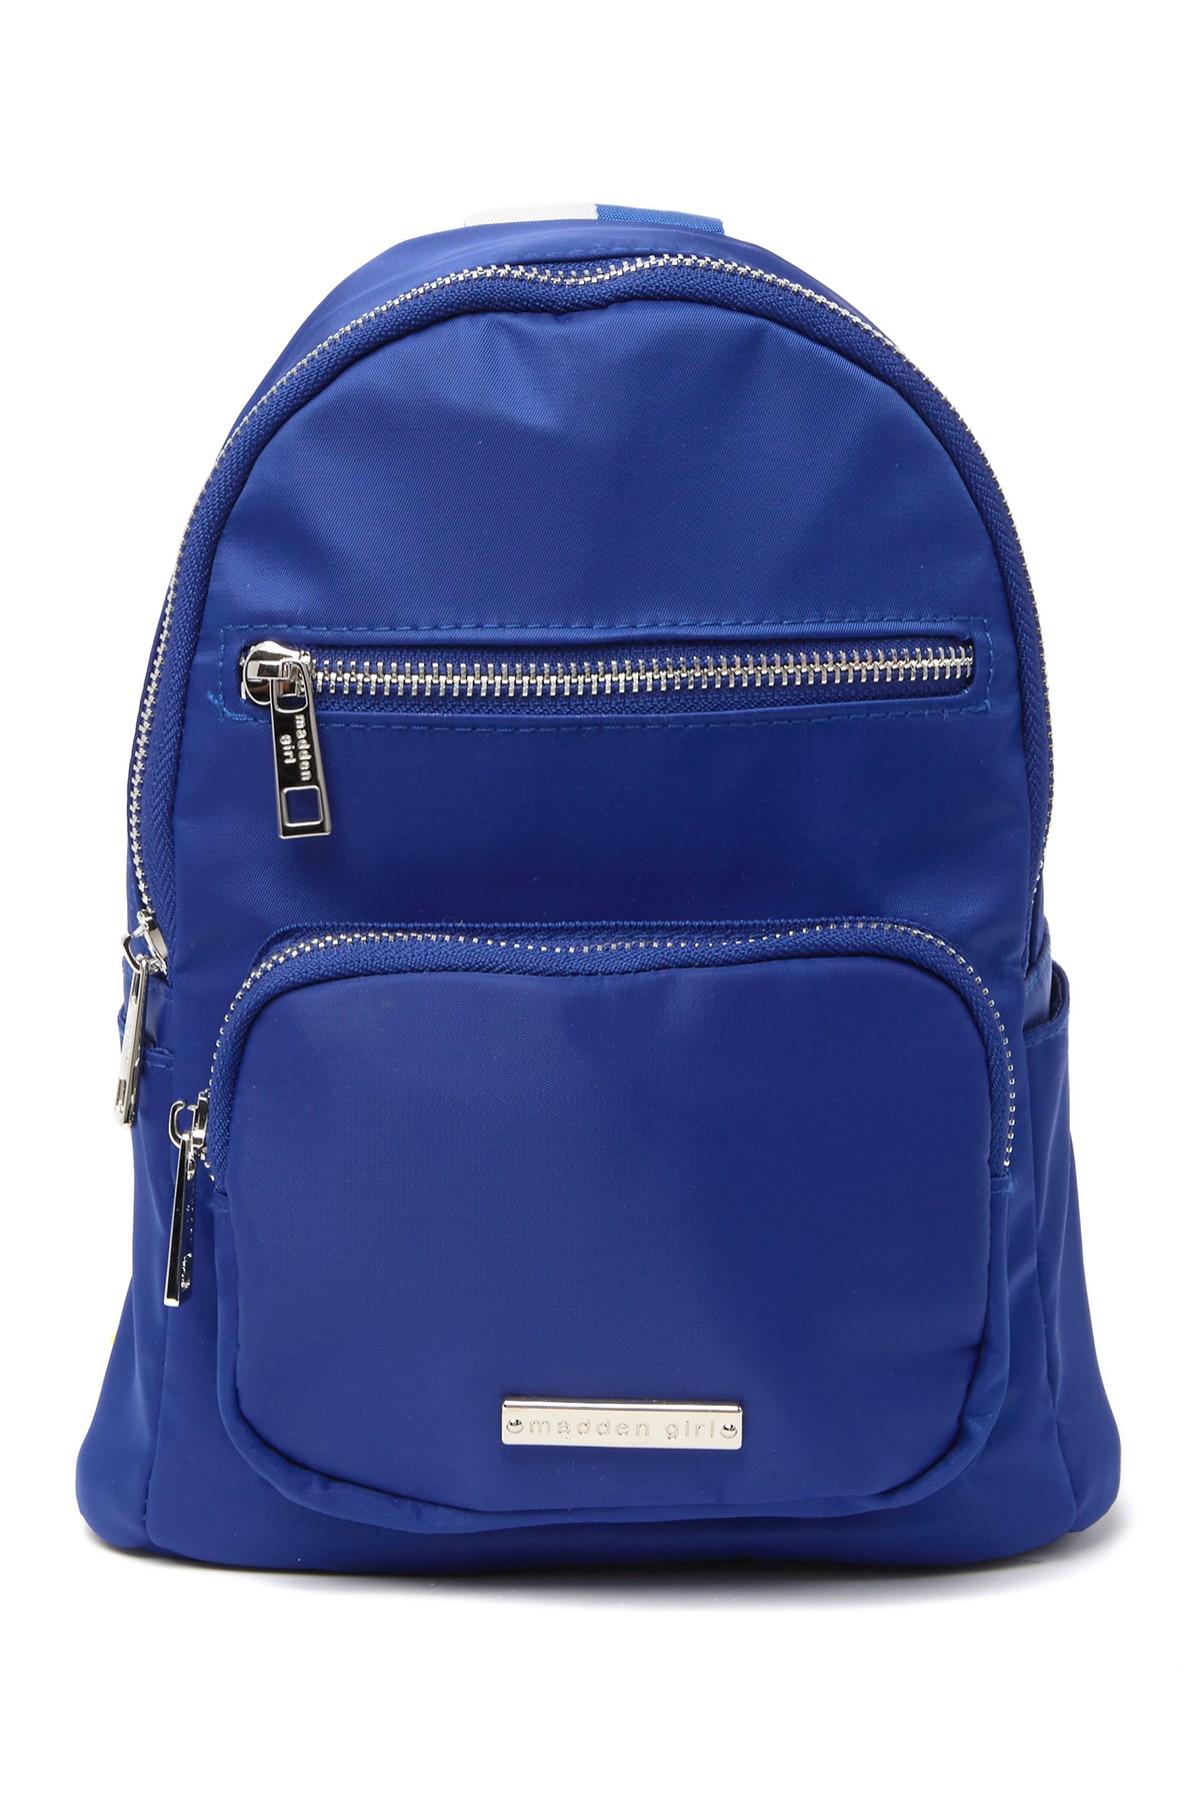 Madden Girl Nylon Sling Bag in Blue - Lyst